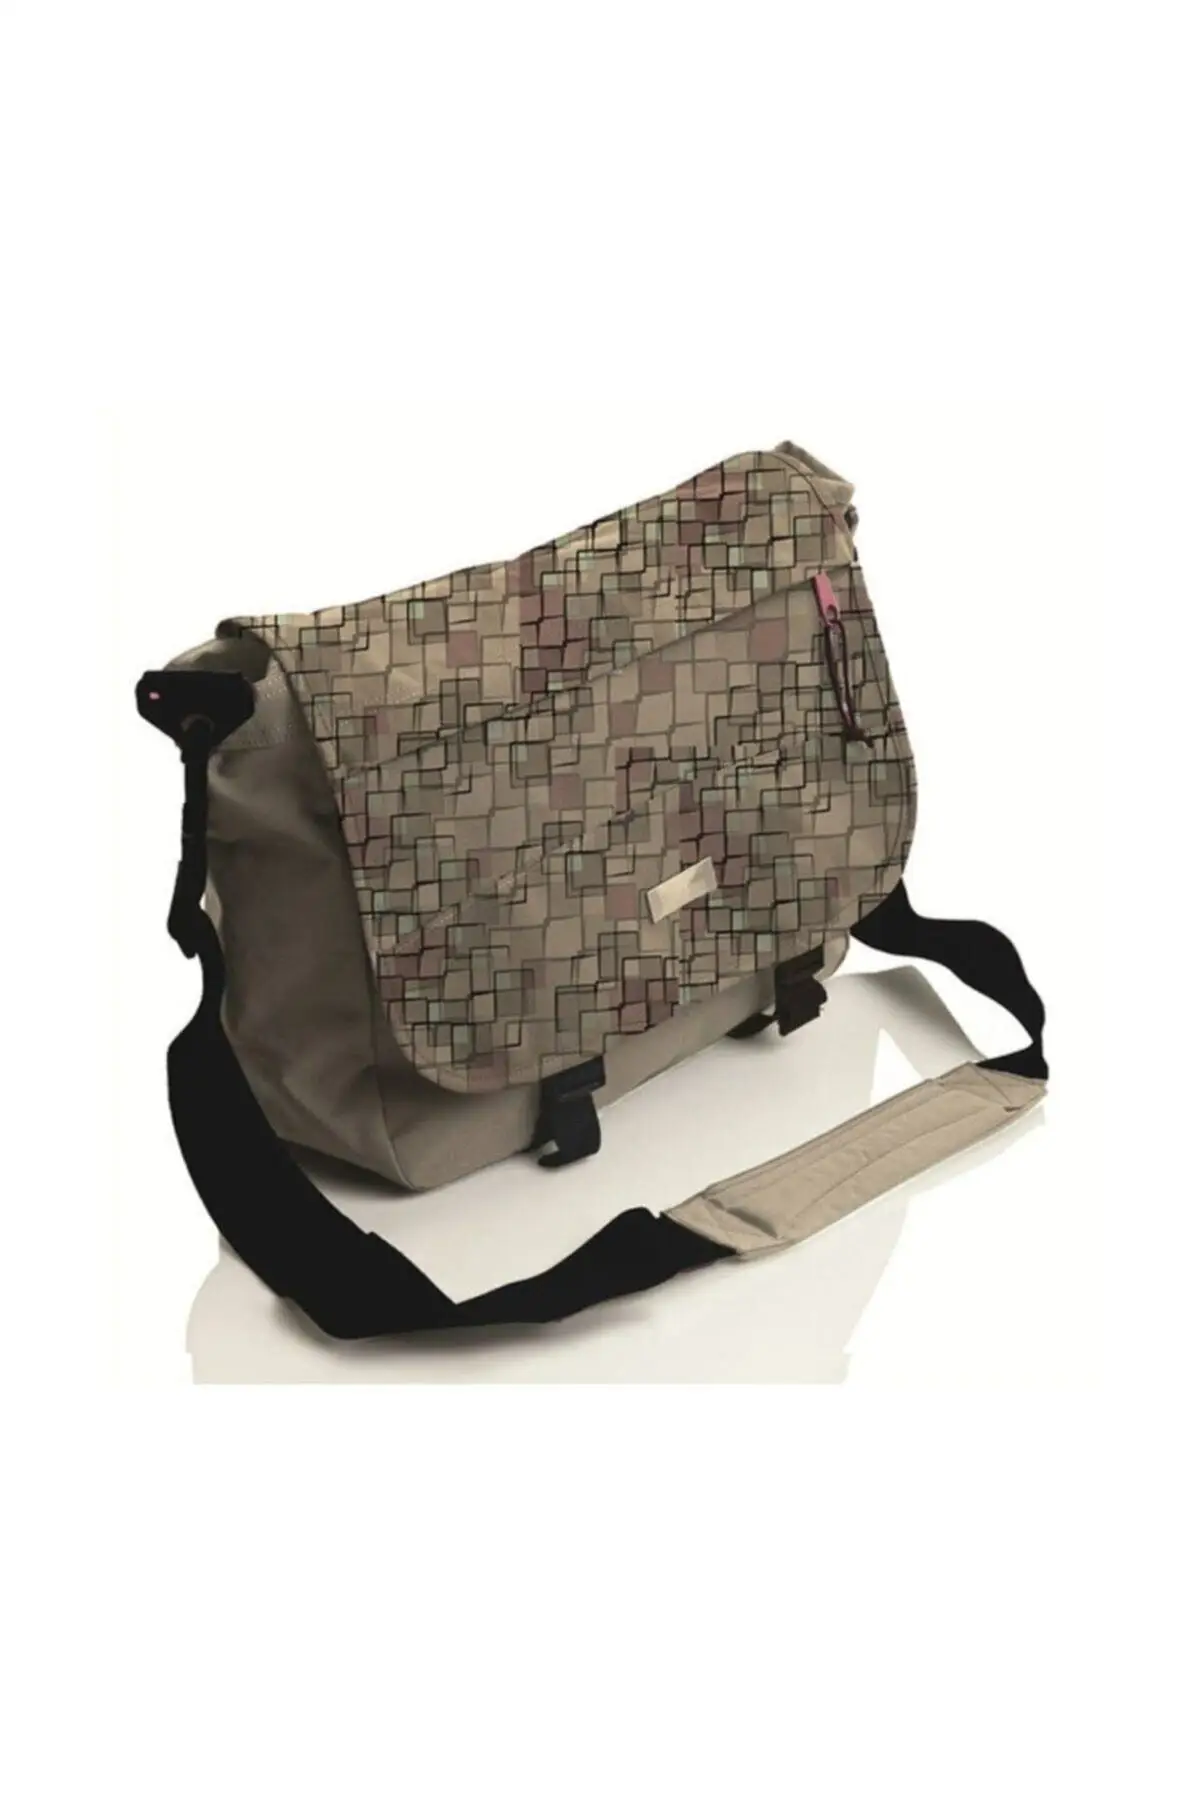 Женская сумка, женский рюкзак, женская сумка, женская кожаная сумка-шоппер, сумка-почтальонка Faber-castell, сумка для колледжа